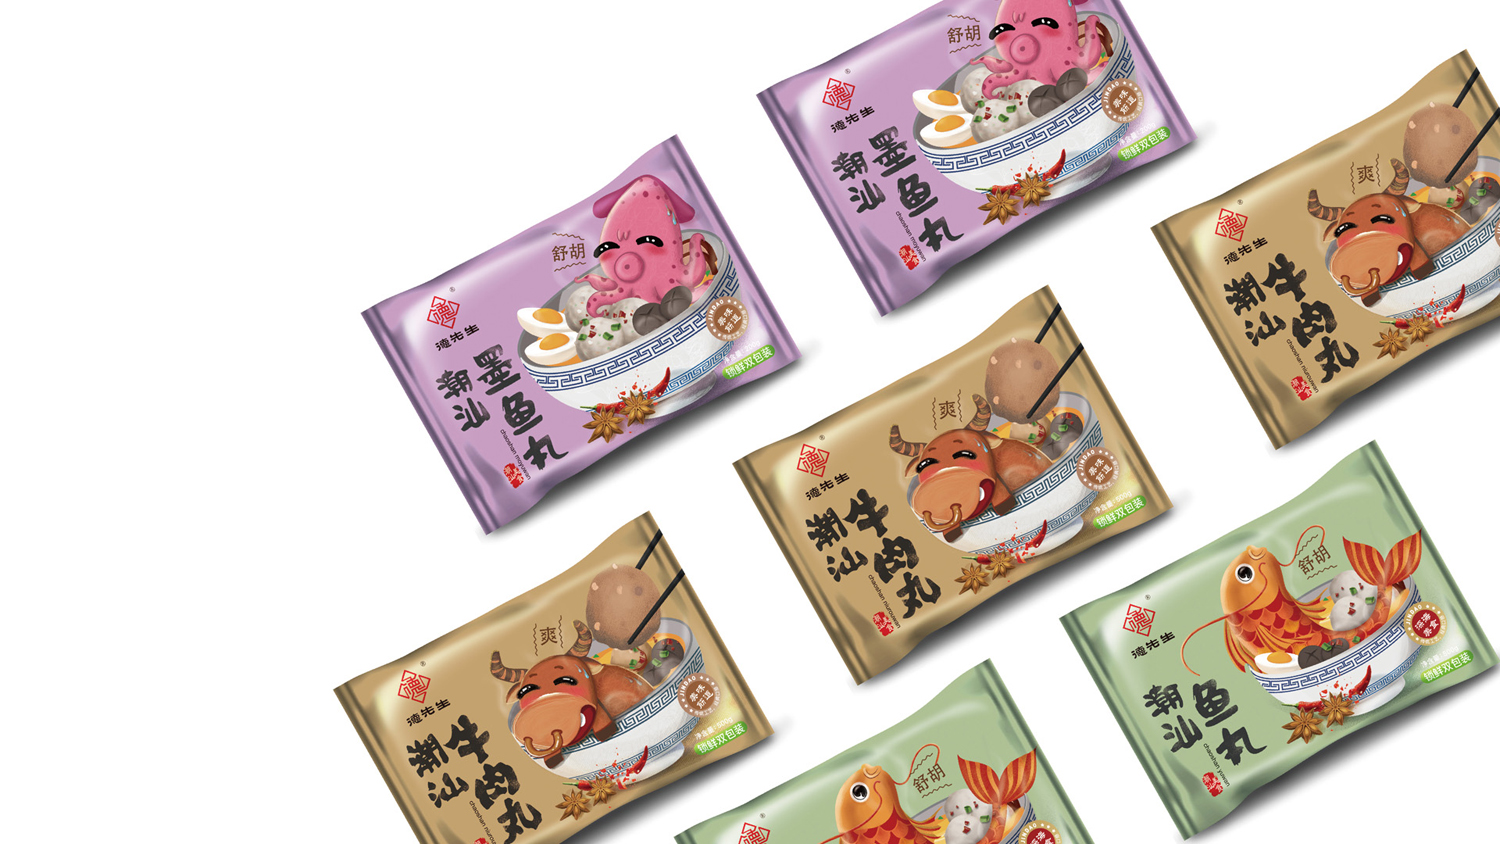 Chao Shan rou wan Packaging Design